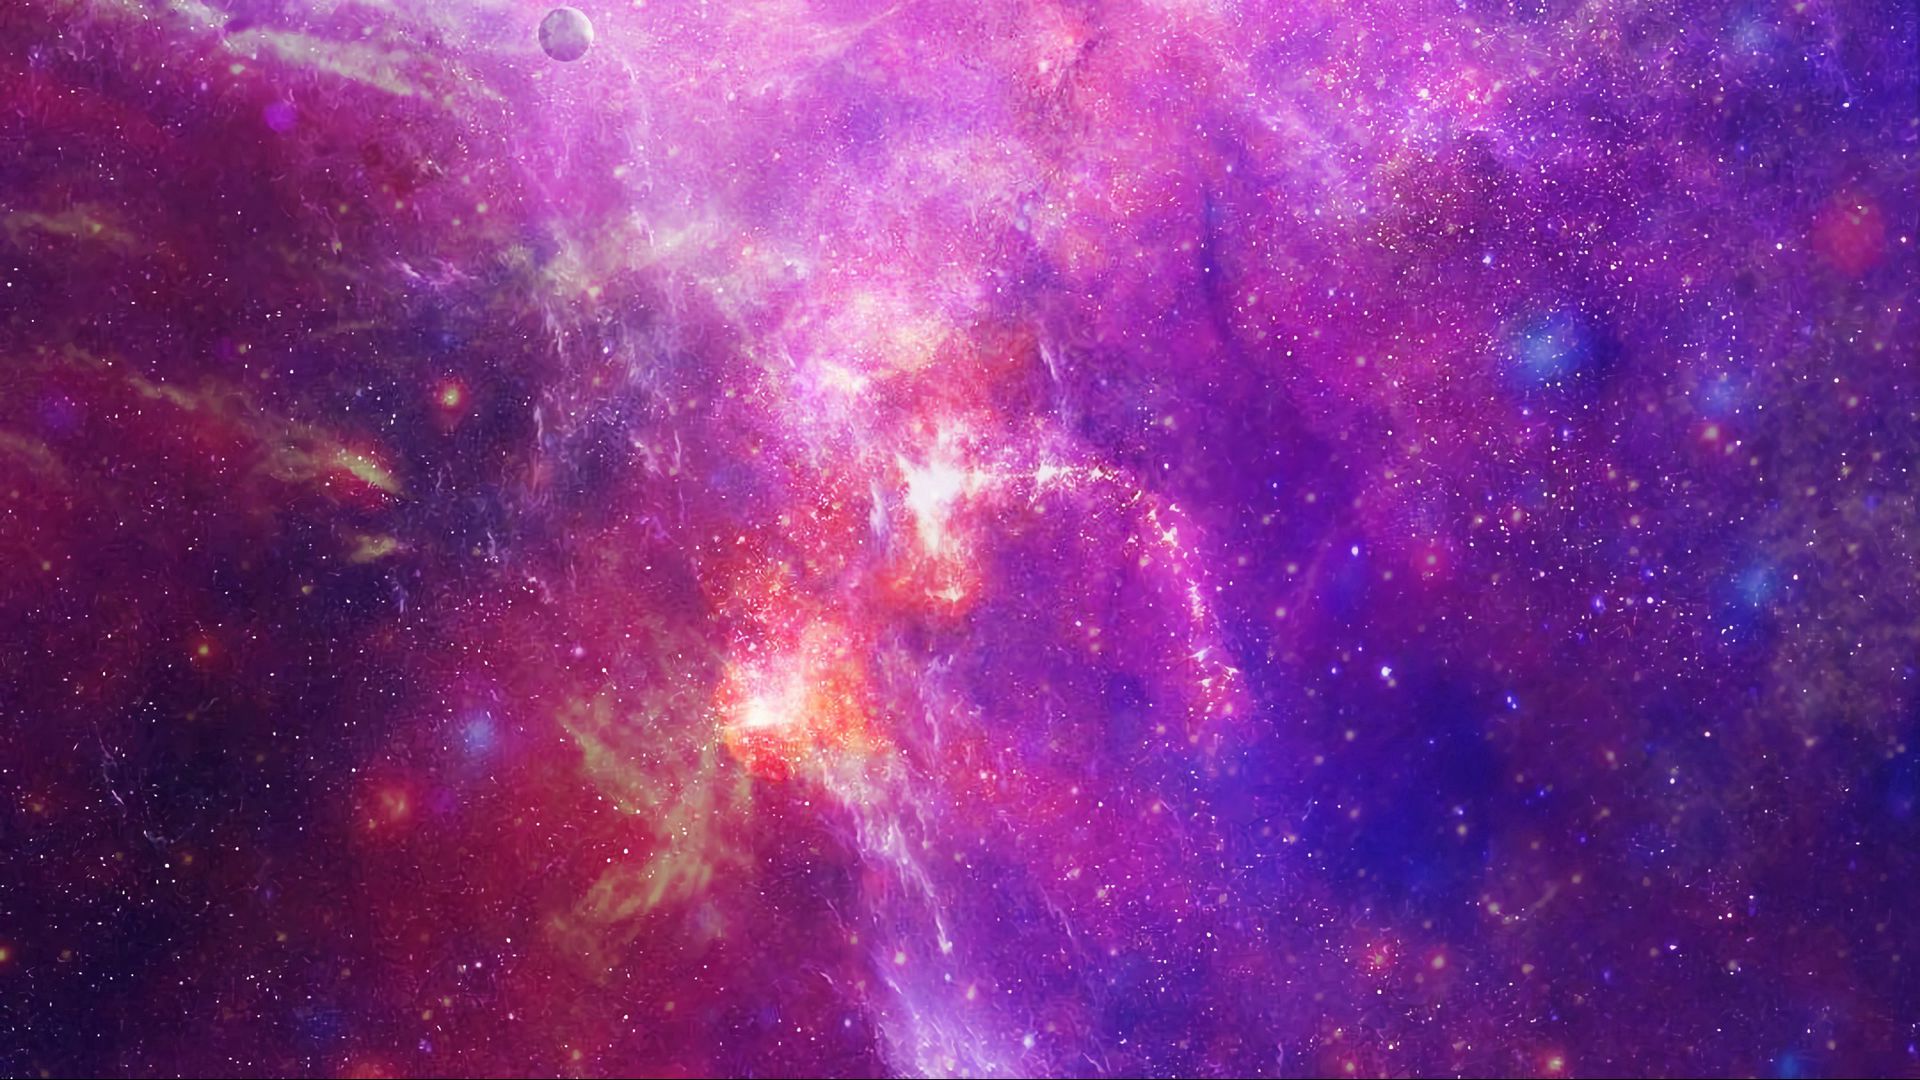 Wallpaper ID 999  space stars galaxy nebula 4k free download